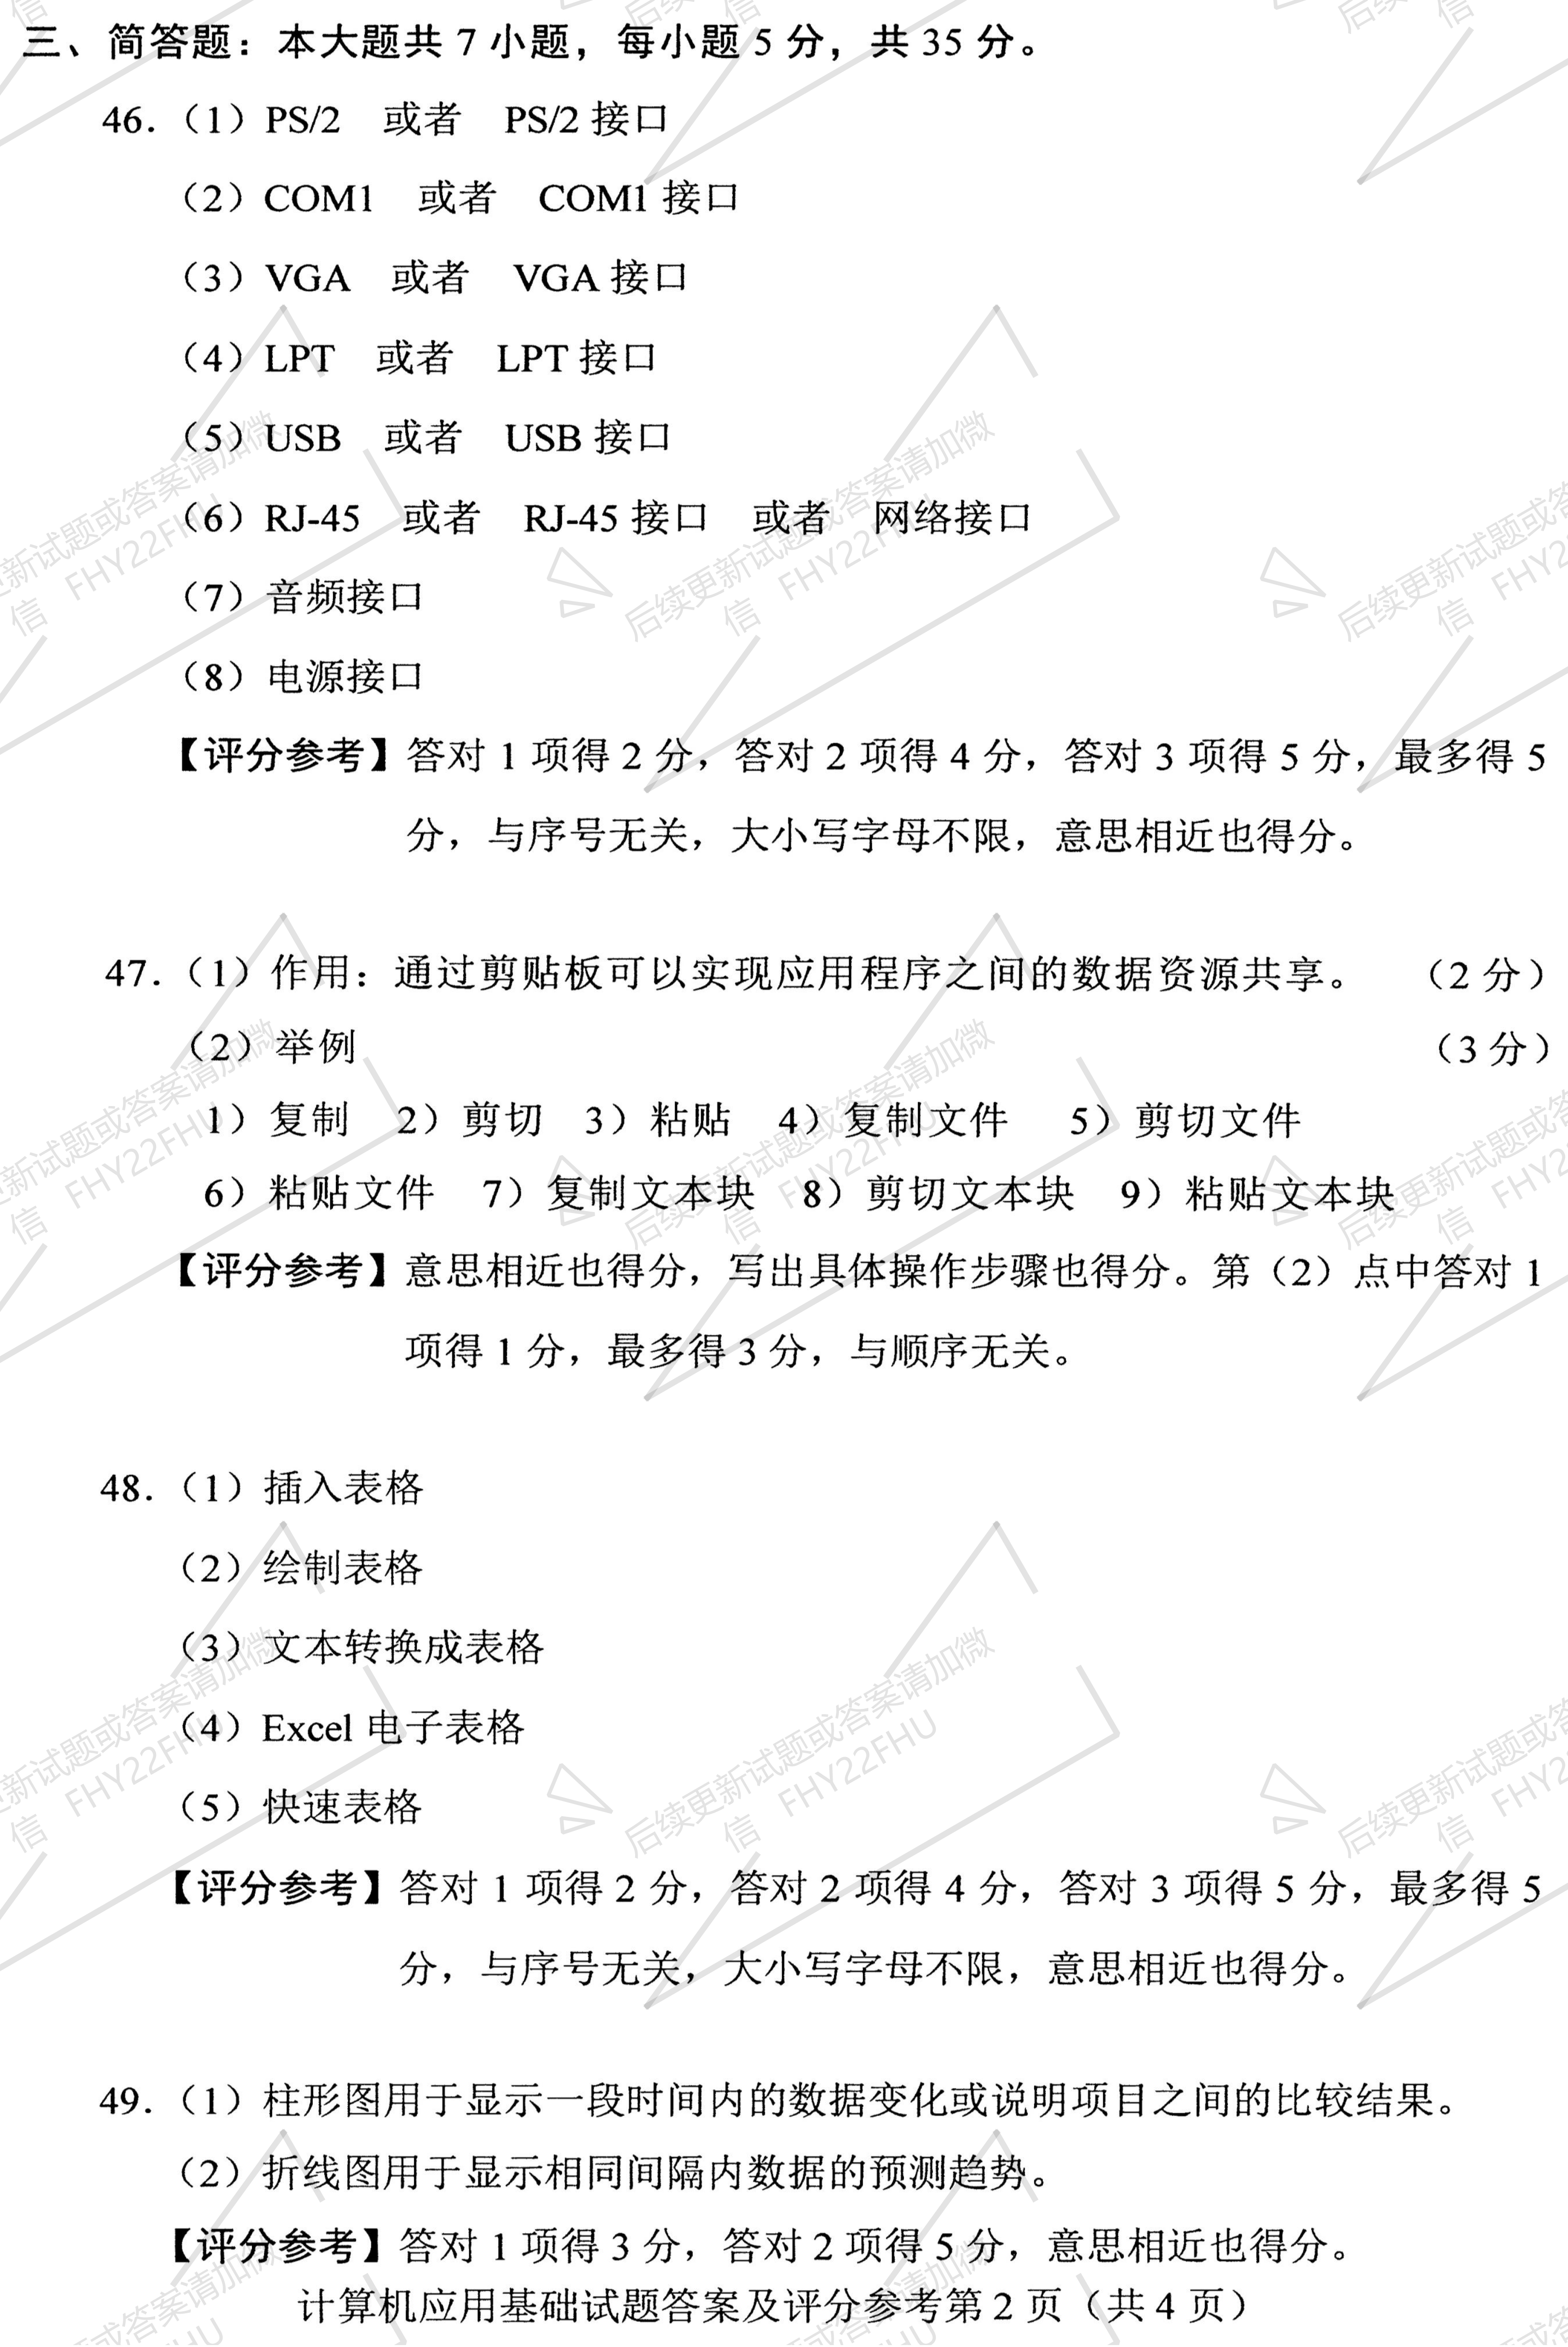 2019年04月贵州自考00018计算机应用基础历年试题